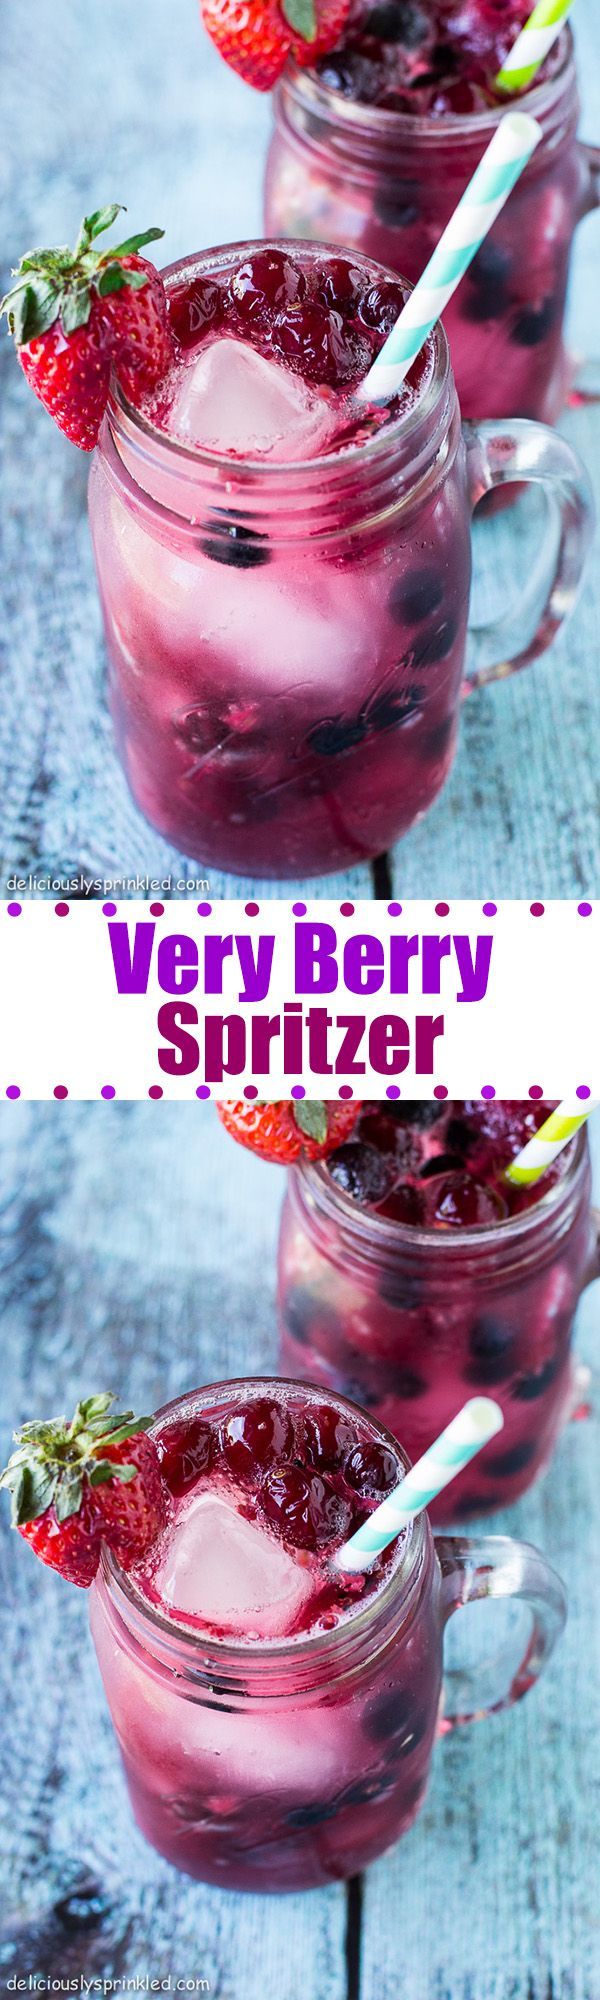 Very Berry Spritzer